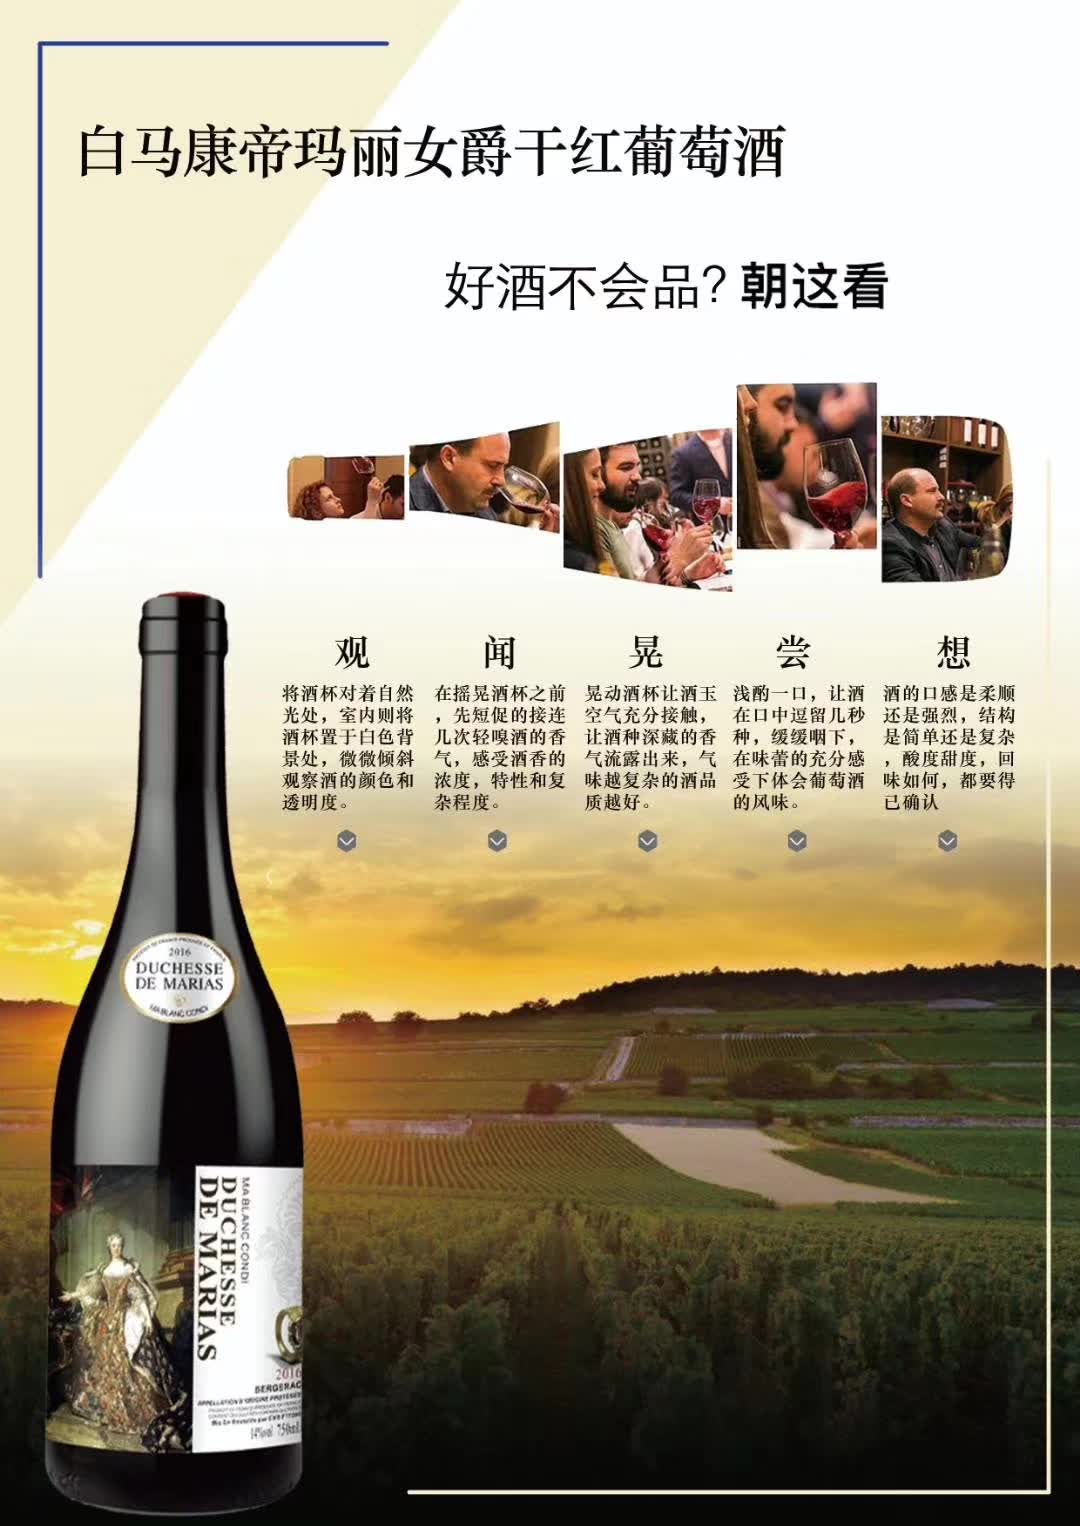 上海万耀白马康帝系列玛丽女爵法国AOP级别网红酒水混酿葡萄酒